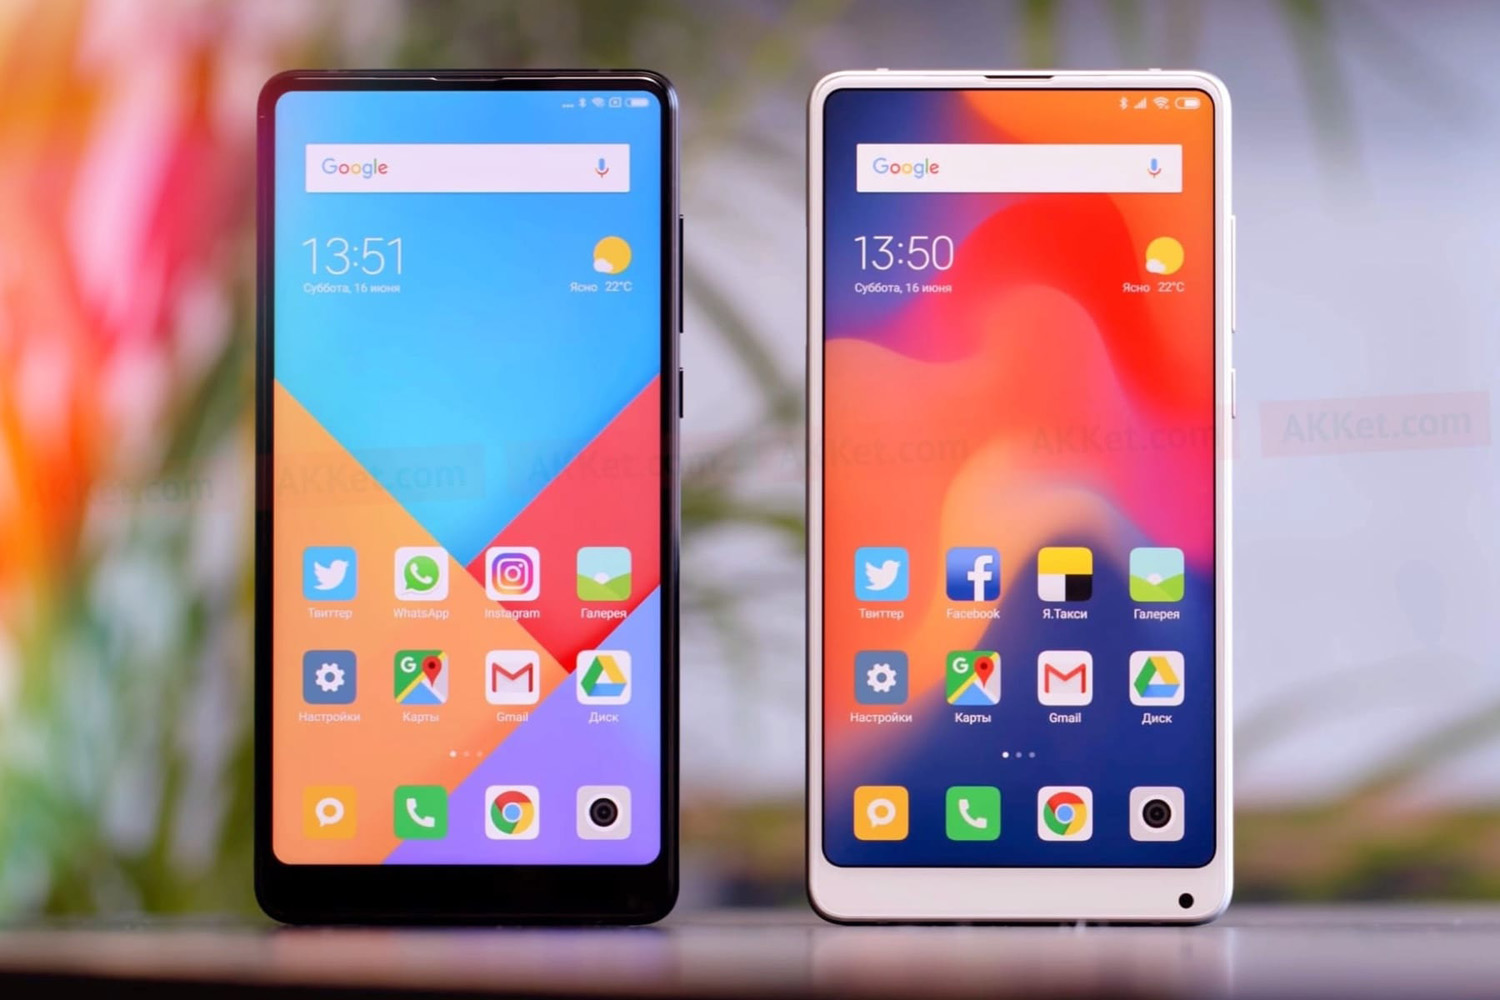 5 Андроид Для Xiaomi